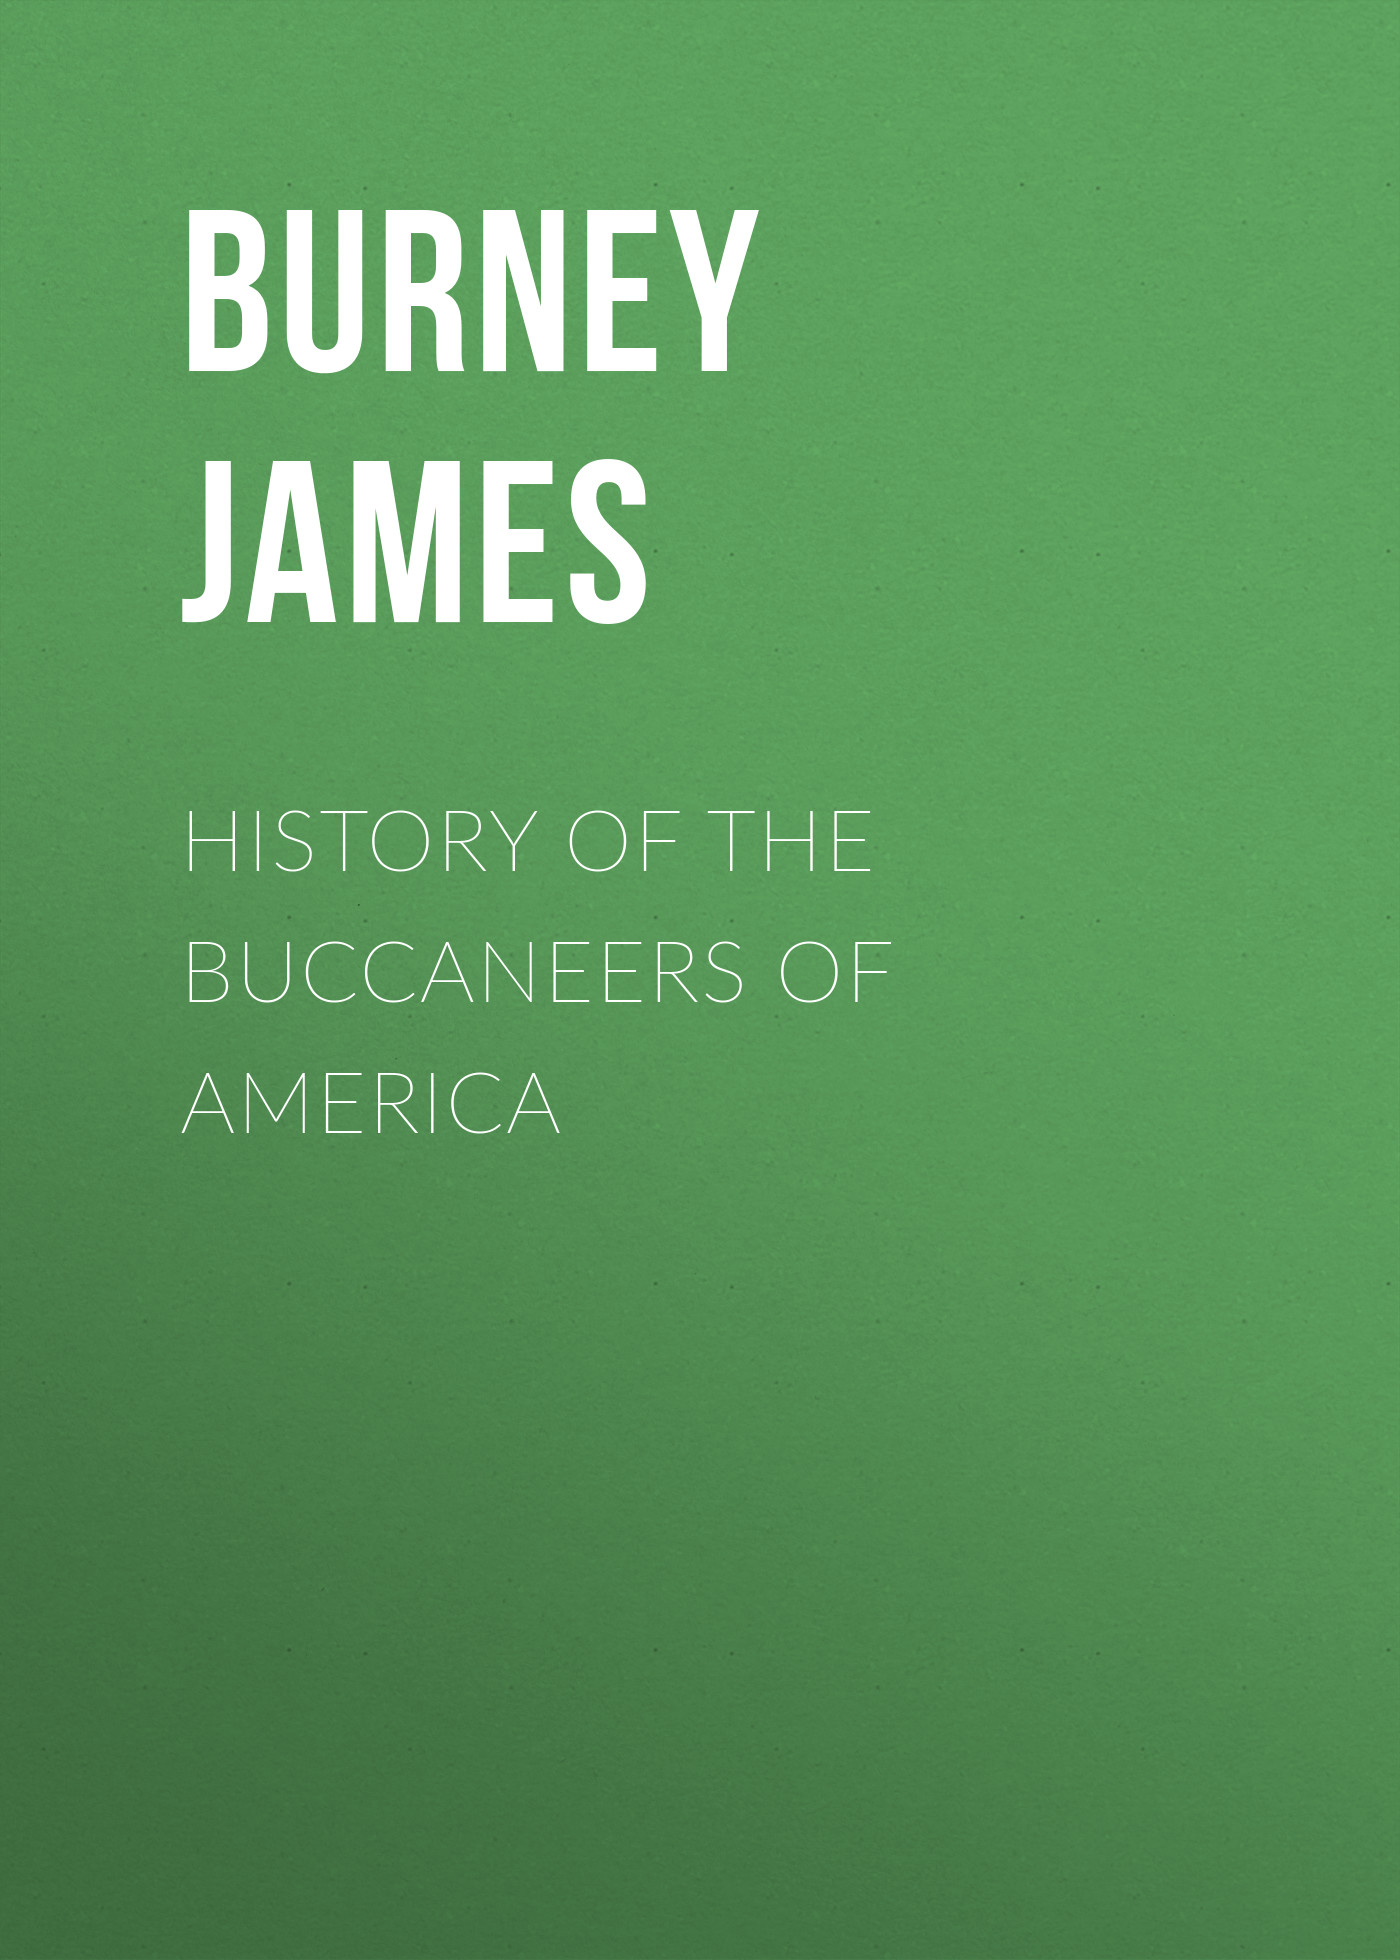 Книга History of the Buccaneers of America из серии , созданная James Burney, может относится к жанру Зарубежная старинная литература, Зарубежная классика. Стоимость электронной книги History of the Buccaneers of America с идентификатором 24170412 составляет 0.90 руб.